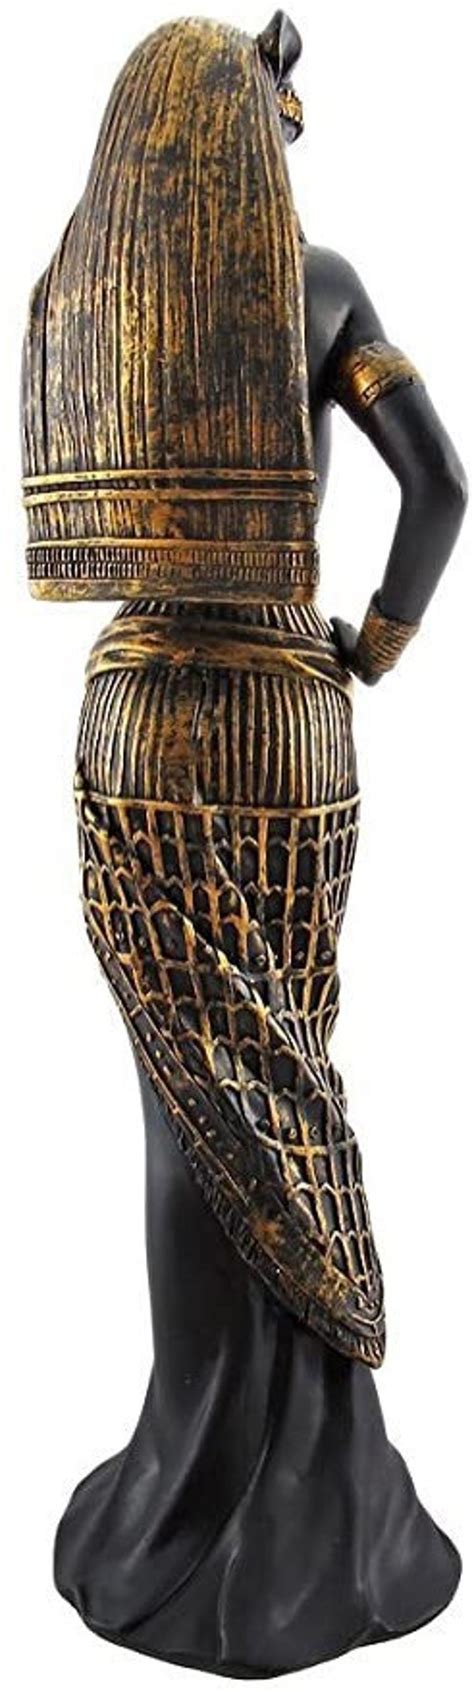 Flirty Bastet Egyptian Mythological Goddess Statue Figurine 11 Etsy